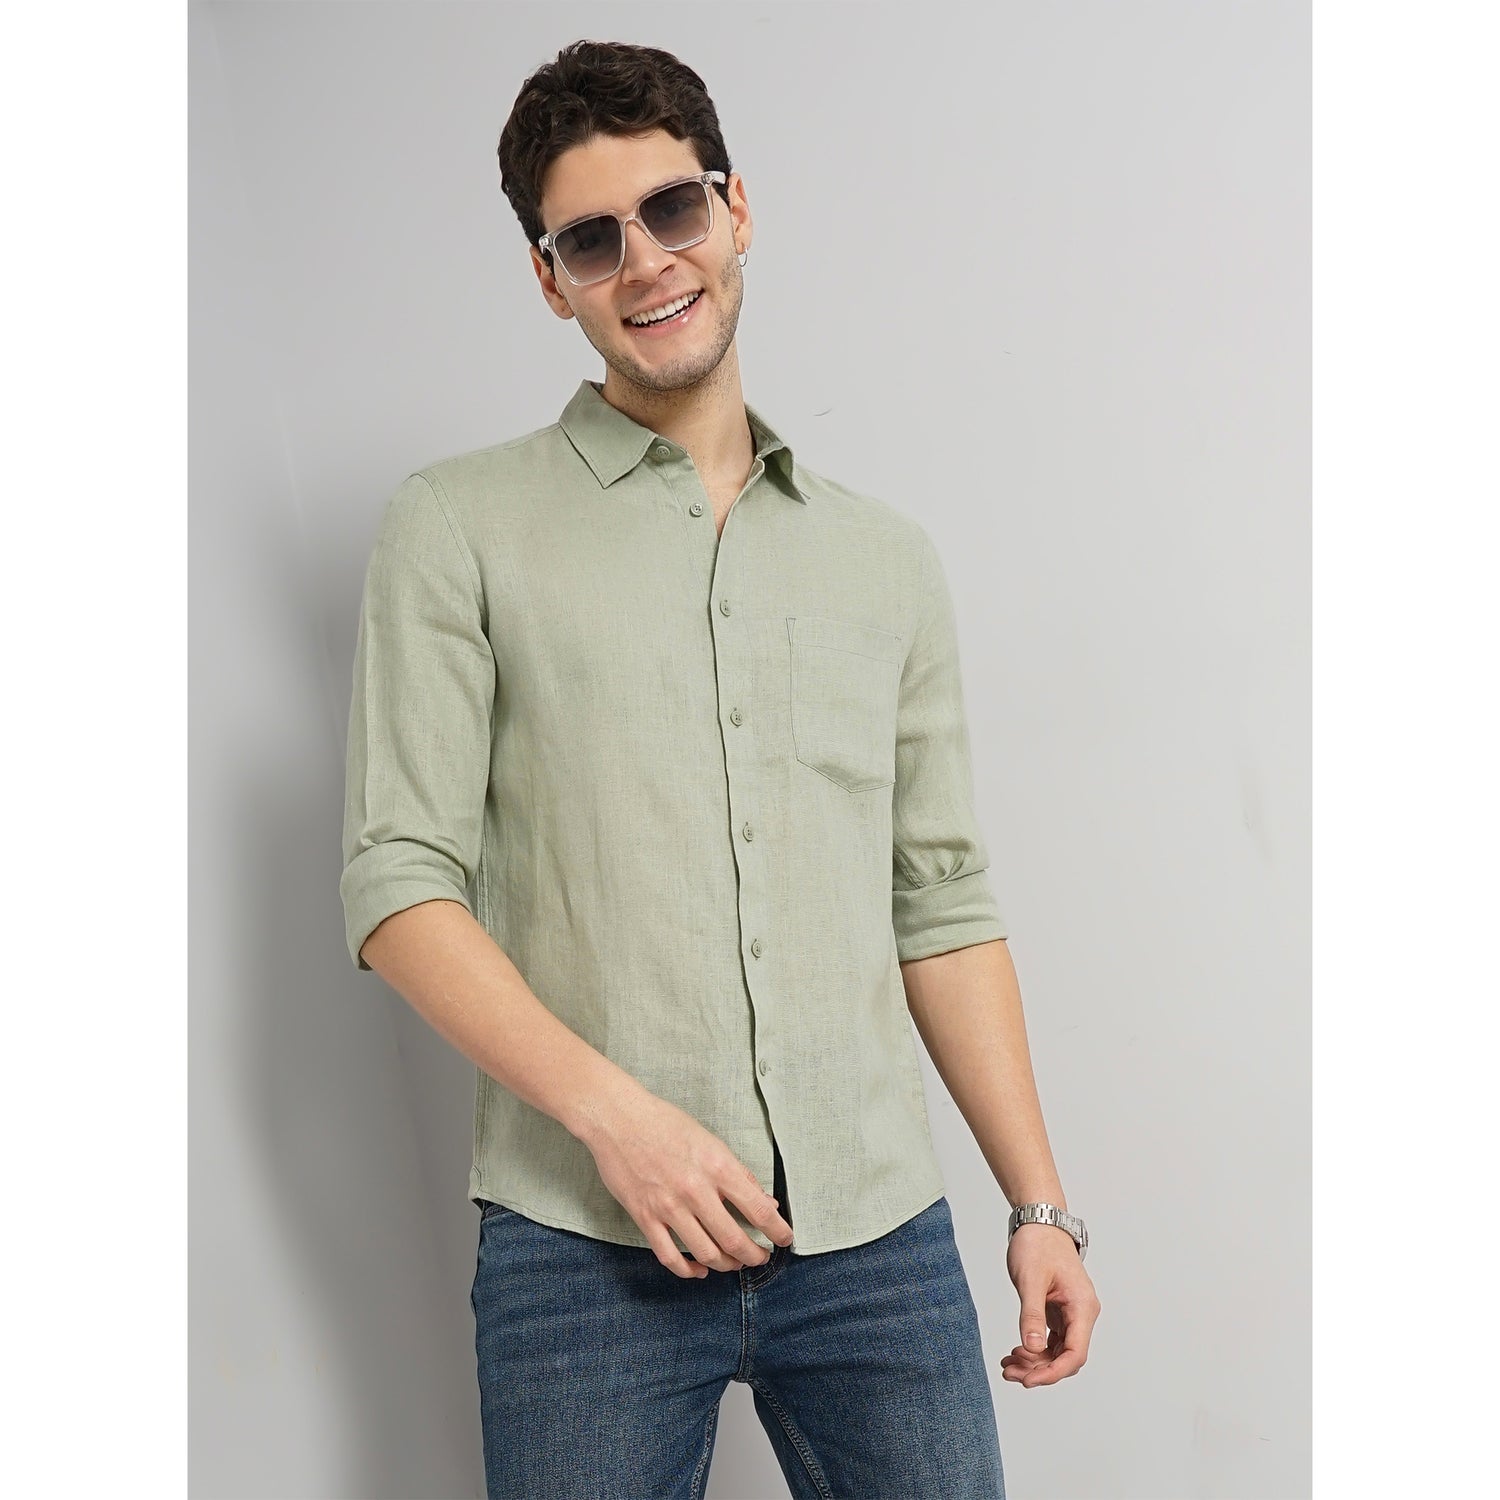 Men Green Solid Regular Fit Linen Casual Shirt (GATALIN)